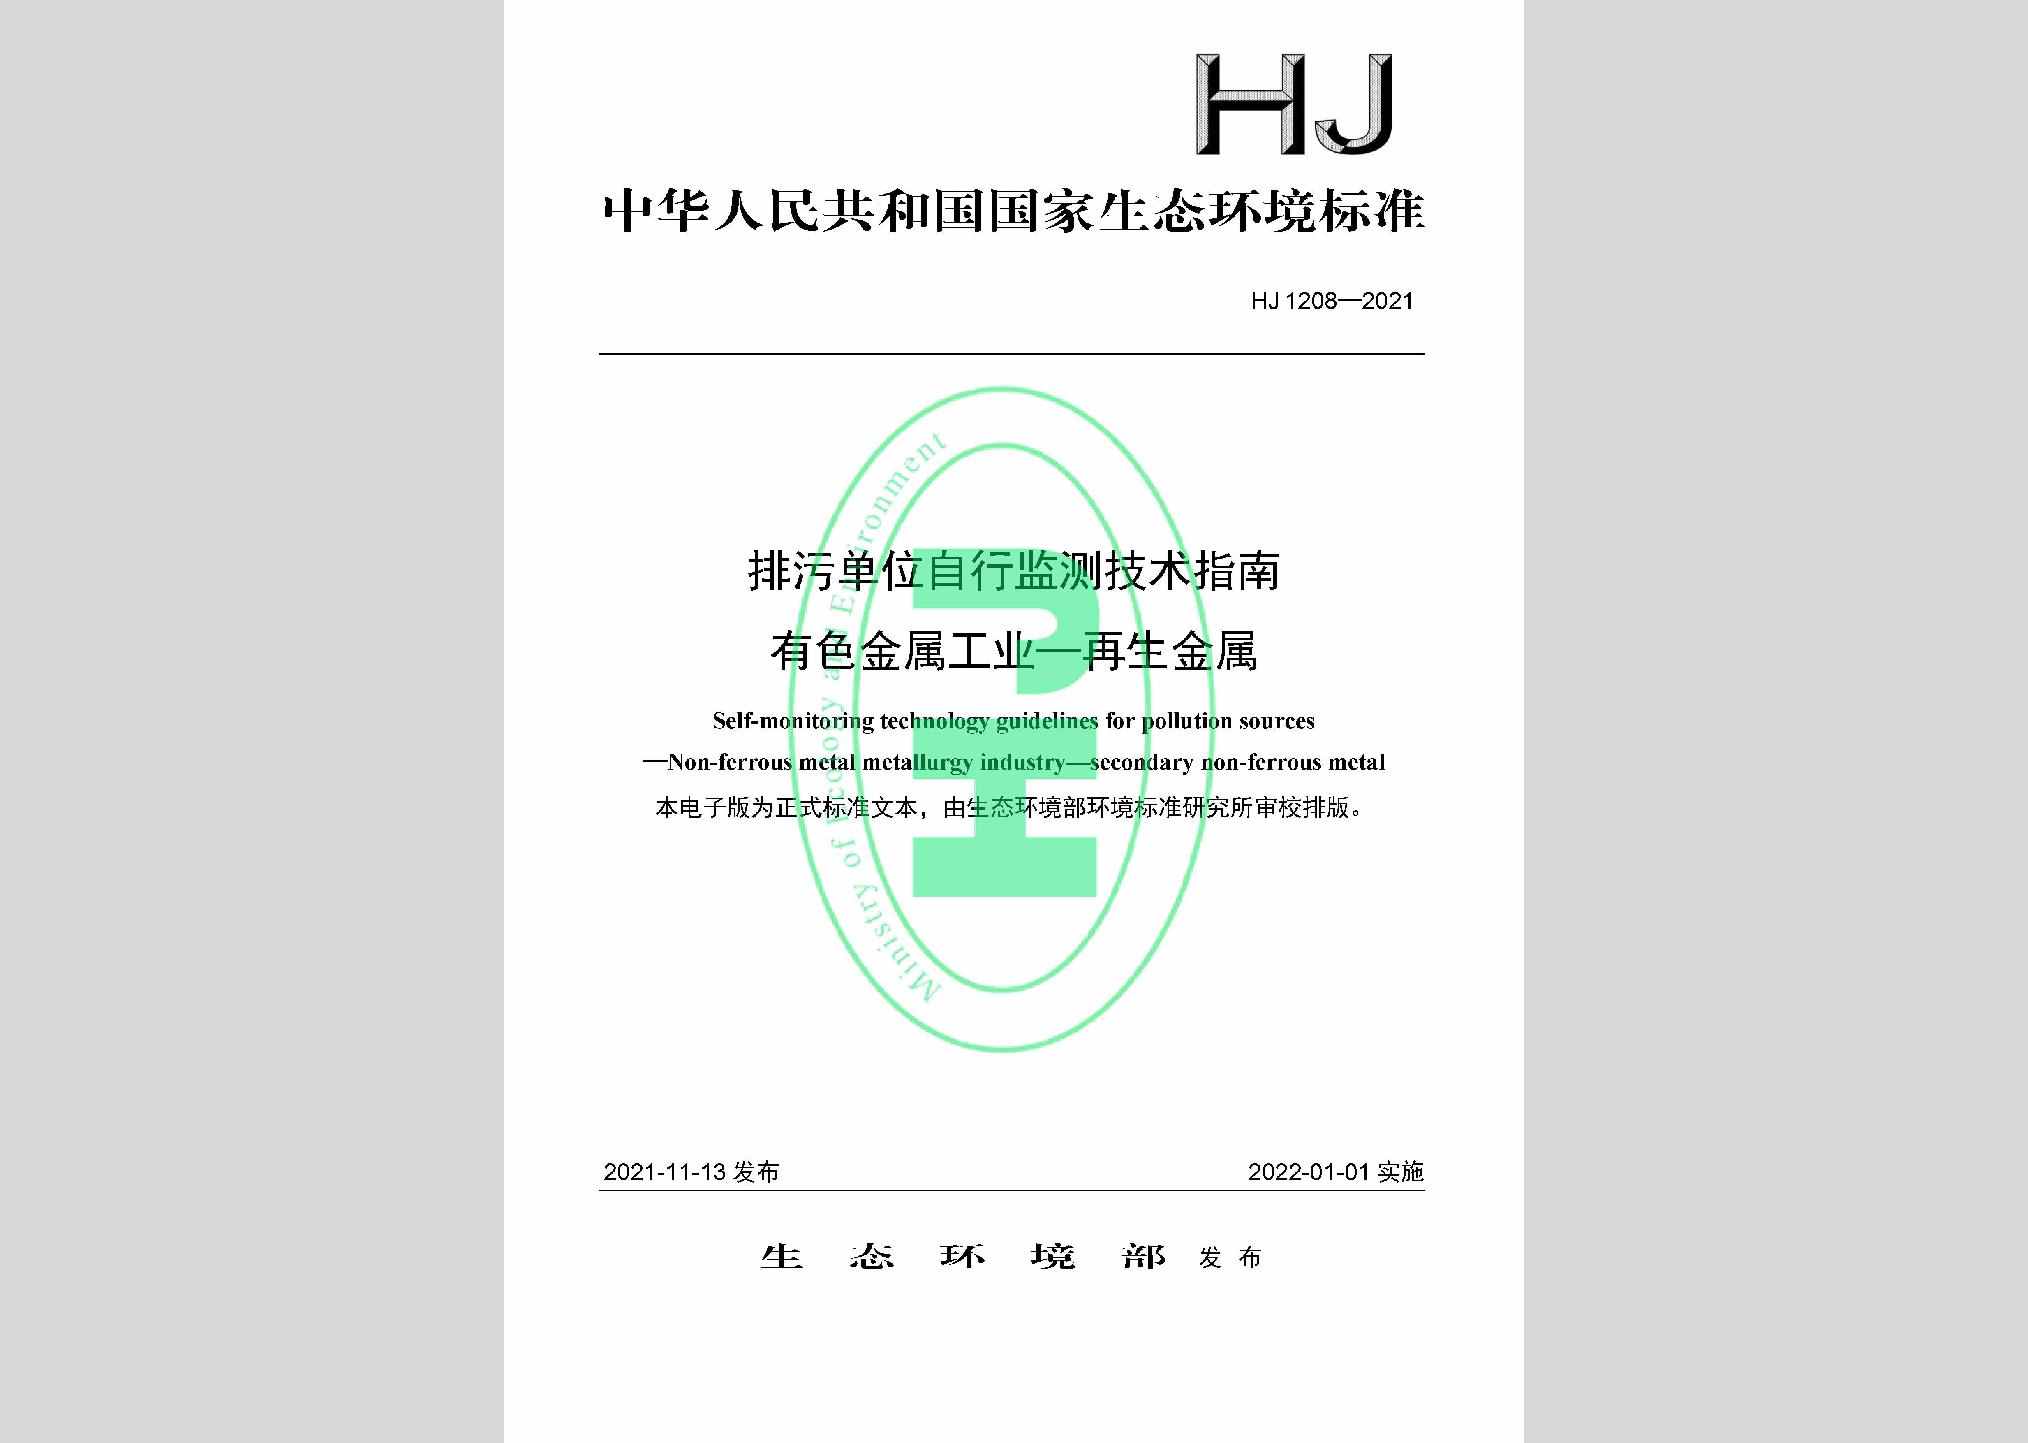 HJ1208-2021：排污单位自行监测技术指南有色金属工业——再生金属